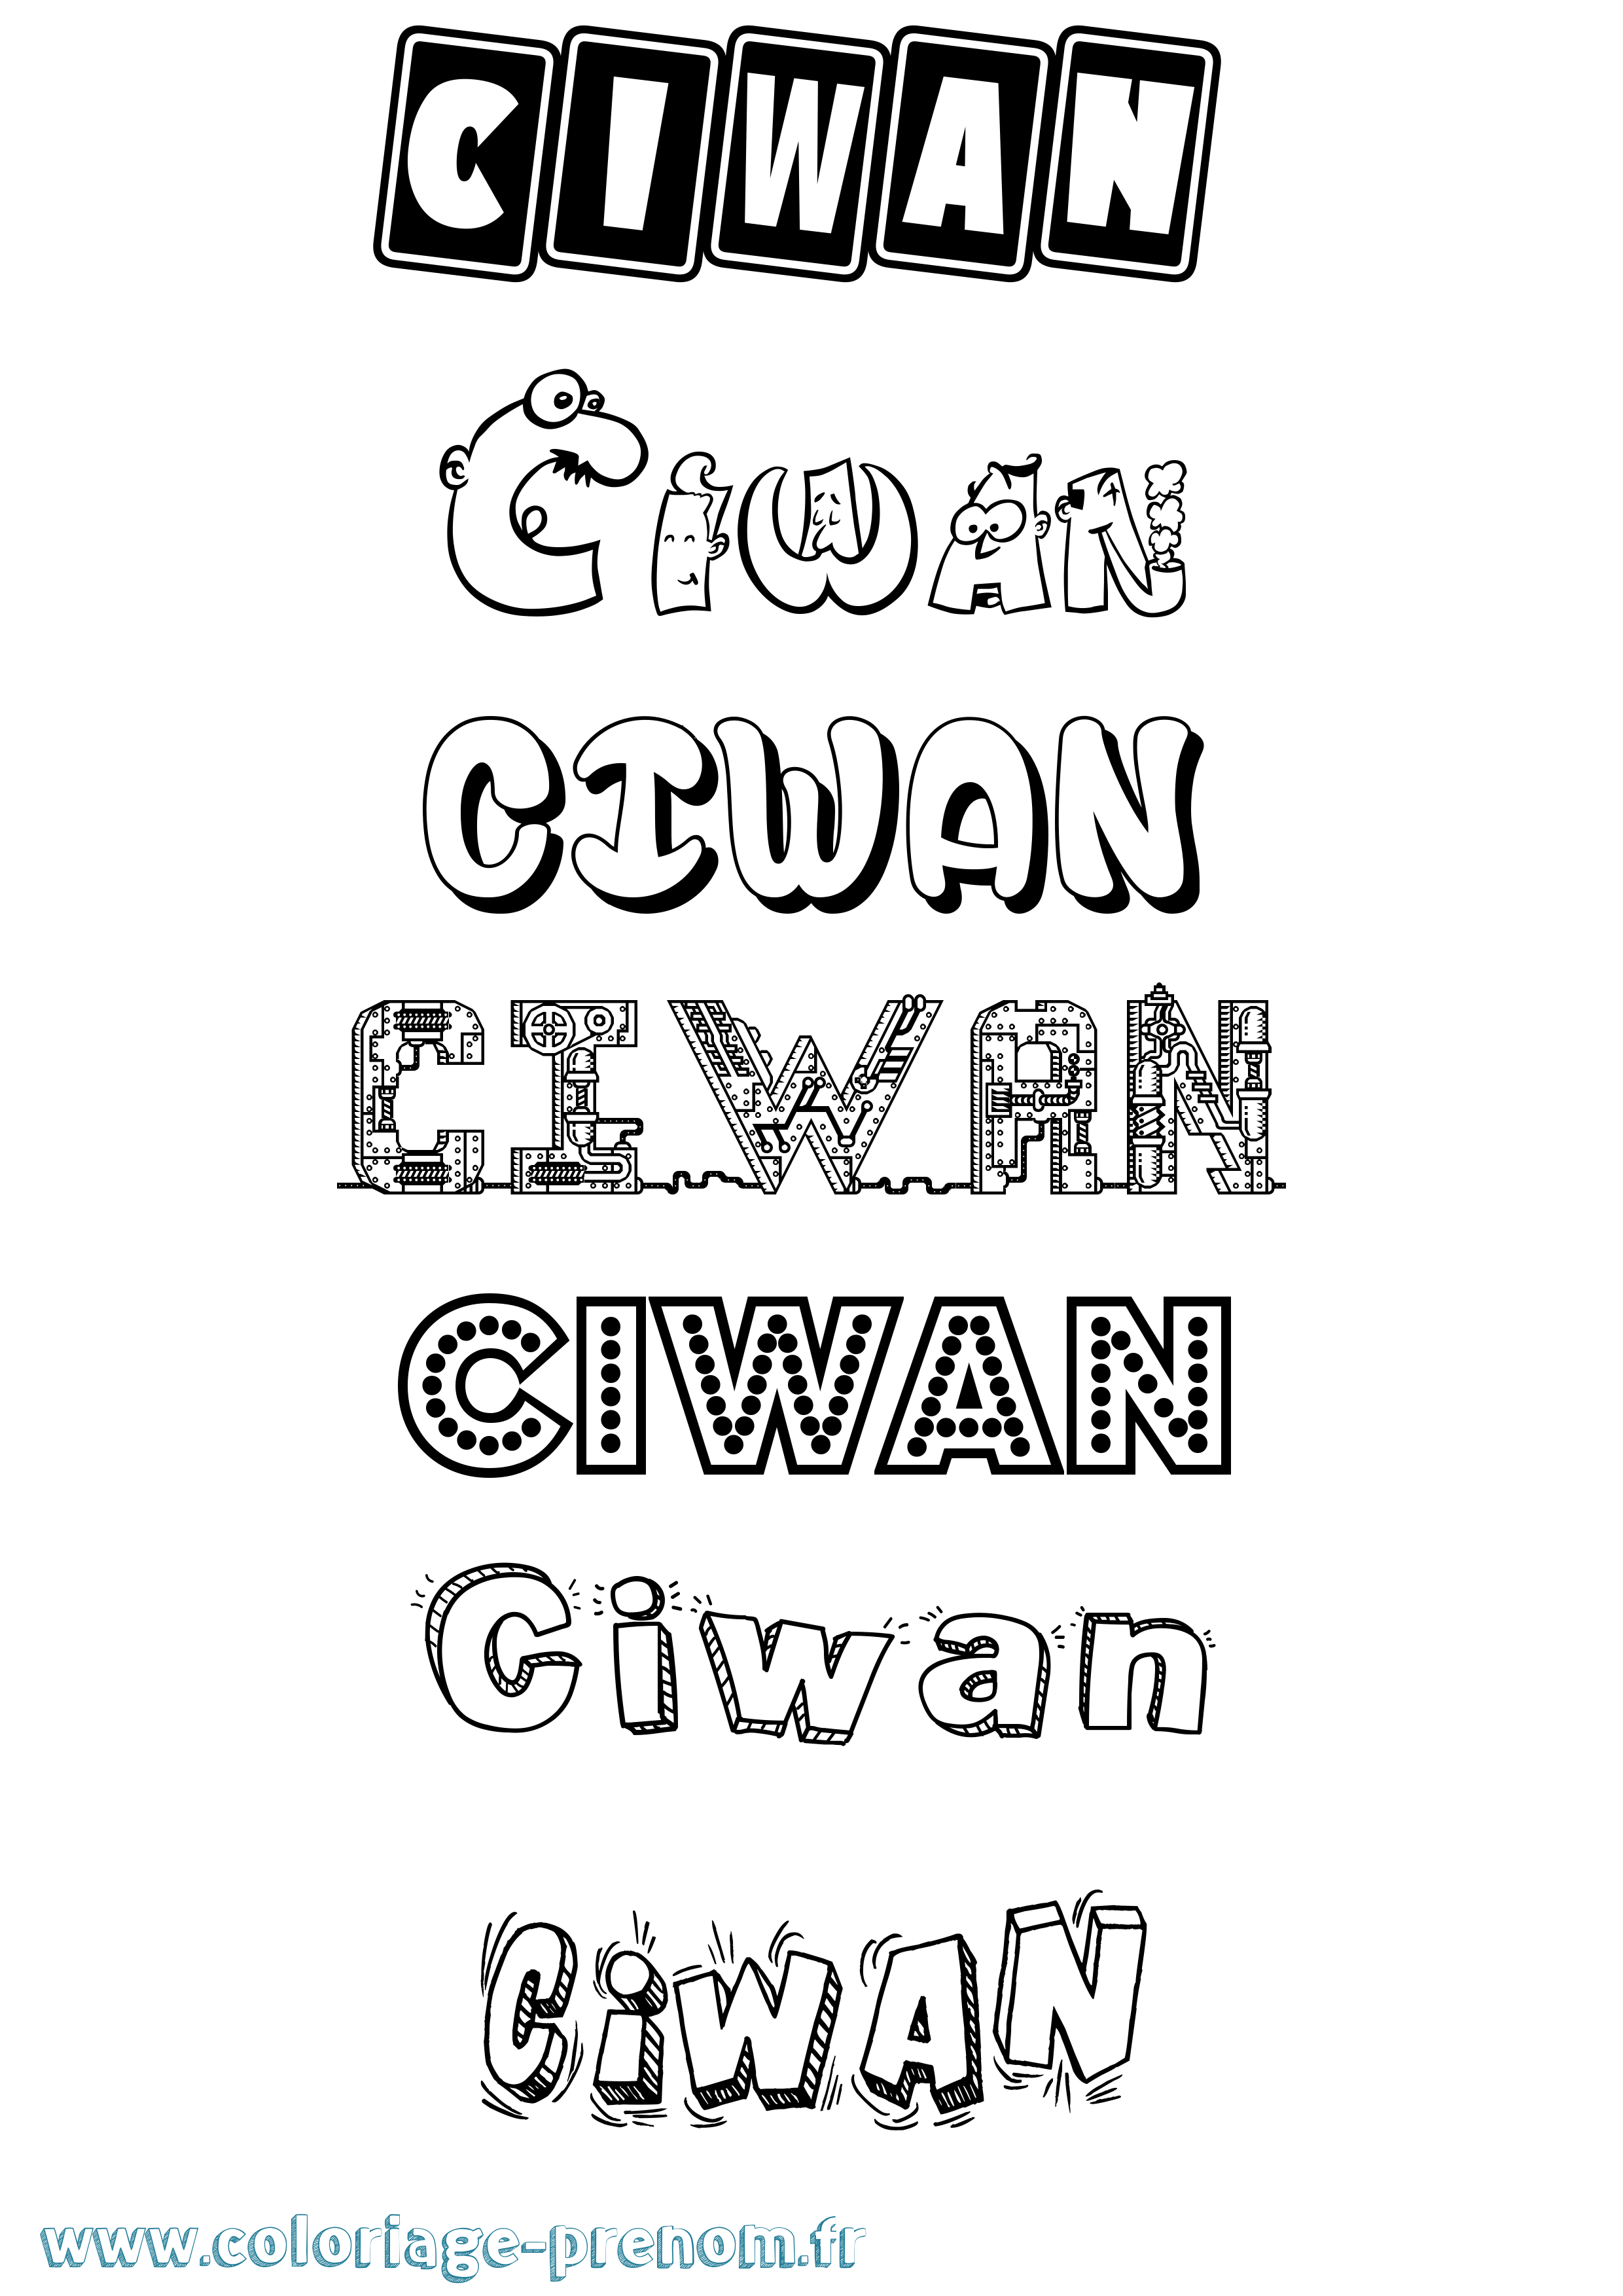 Coloriage prénom Ciwan Fun